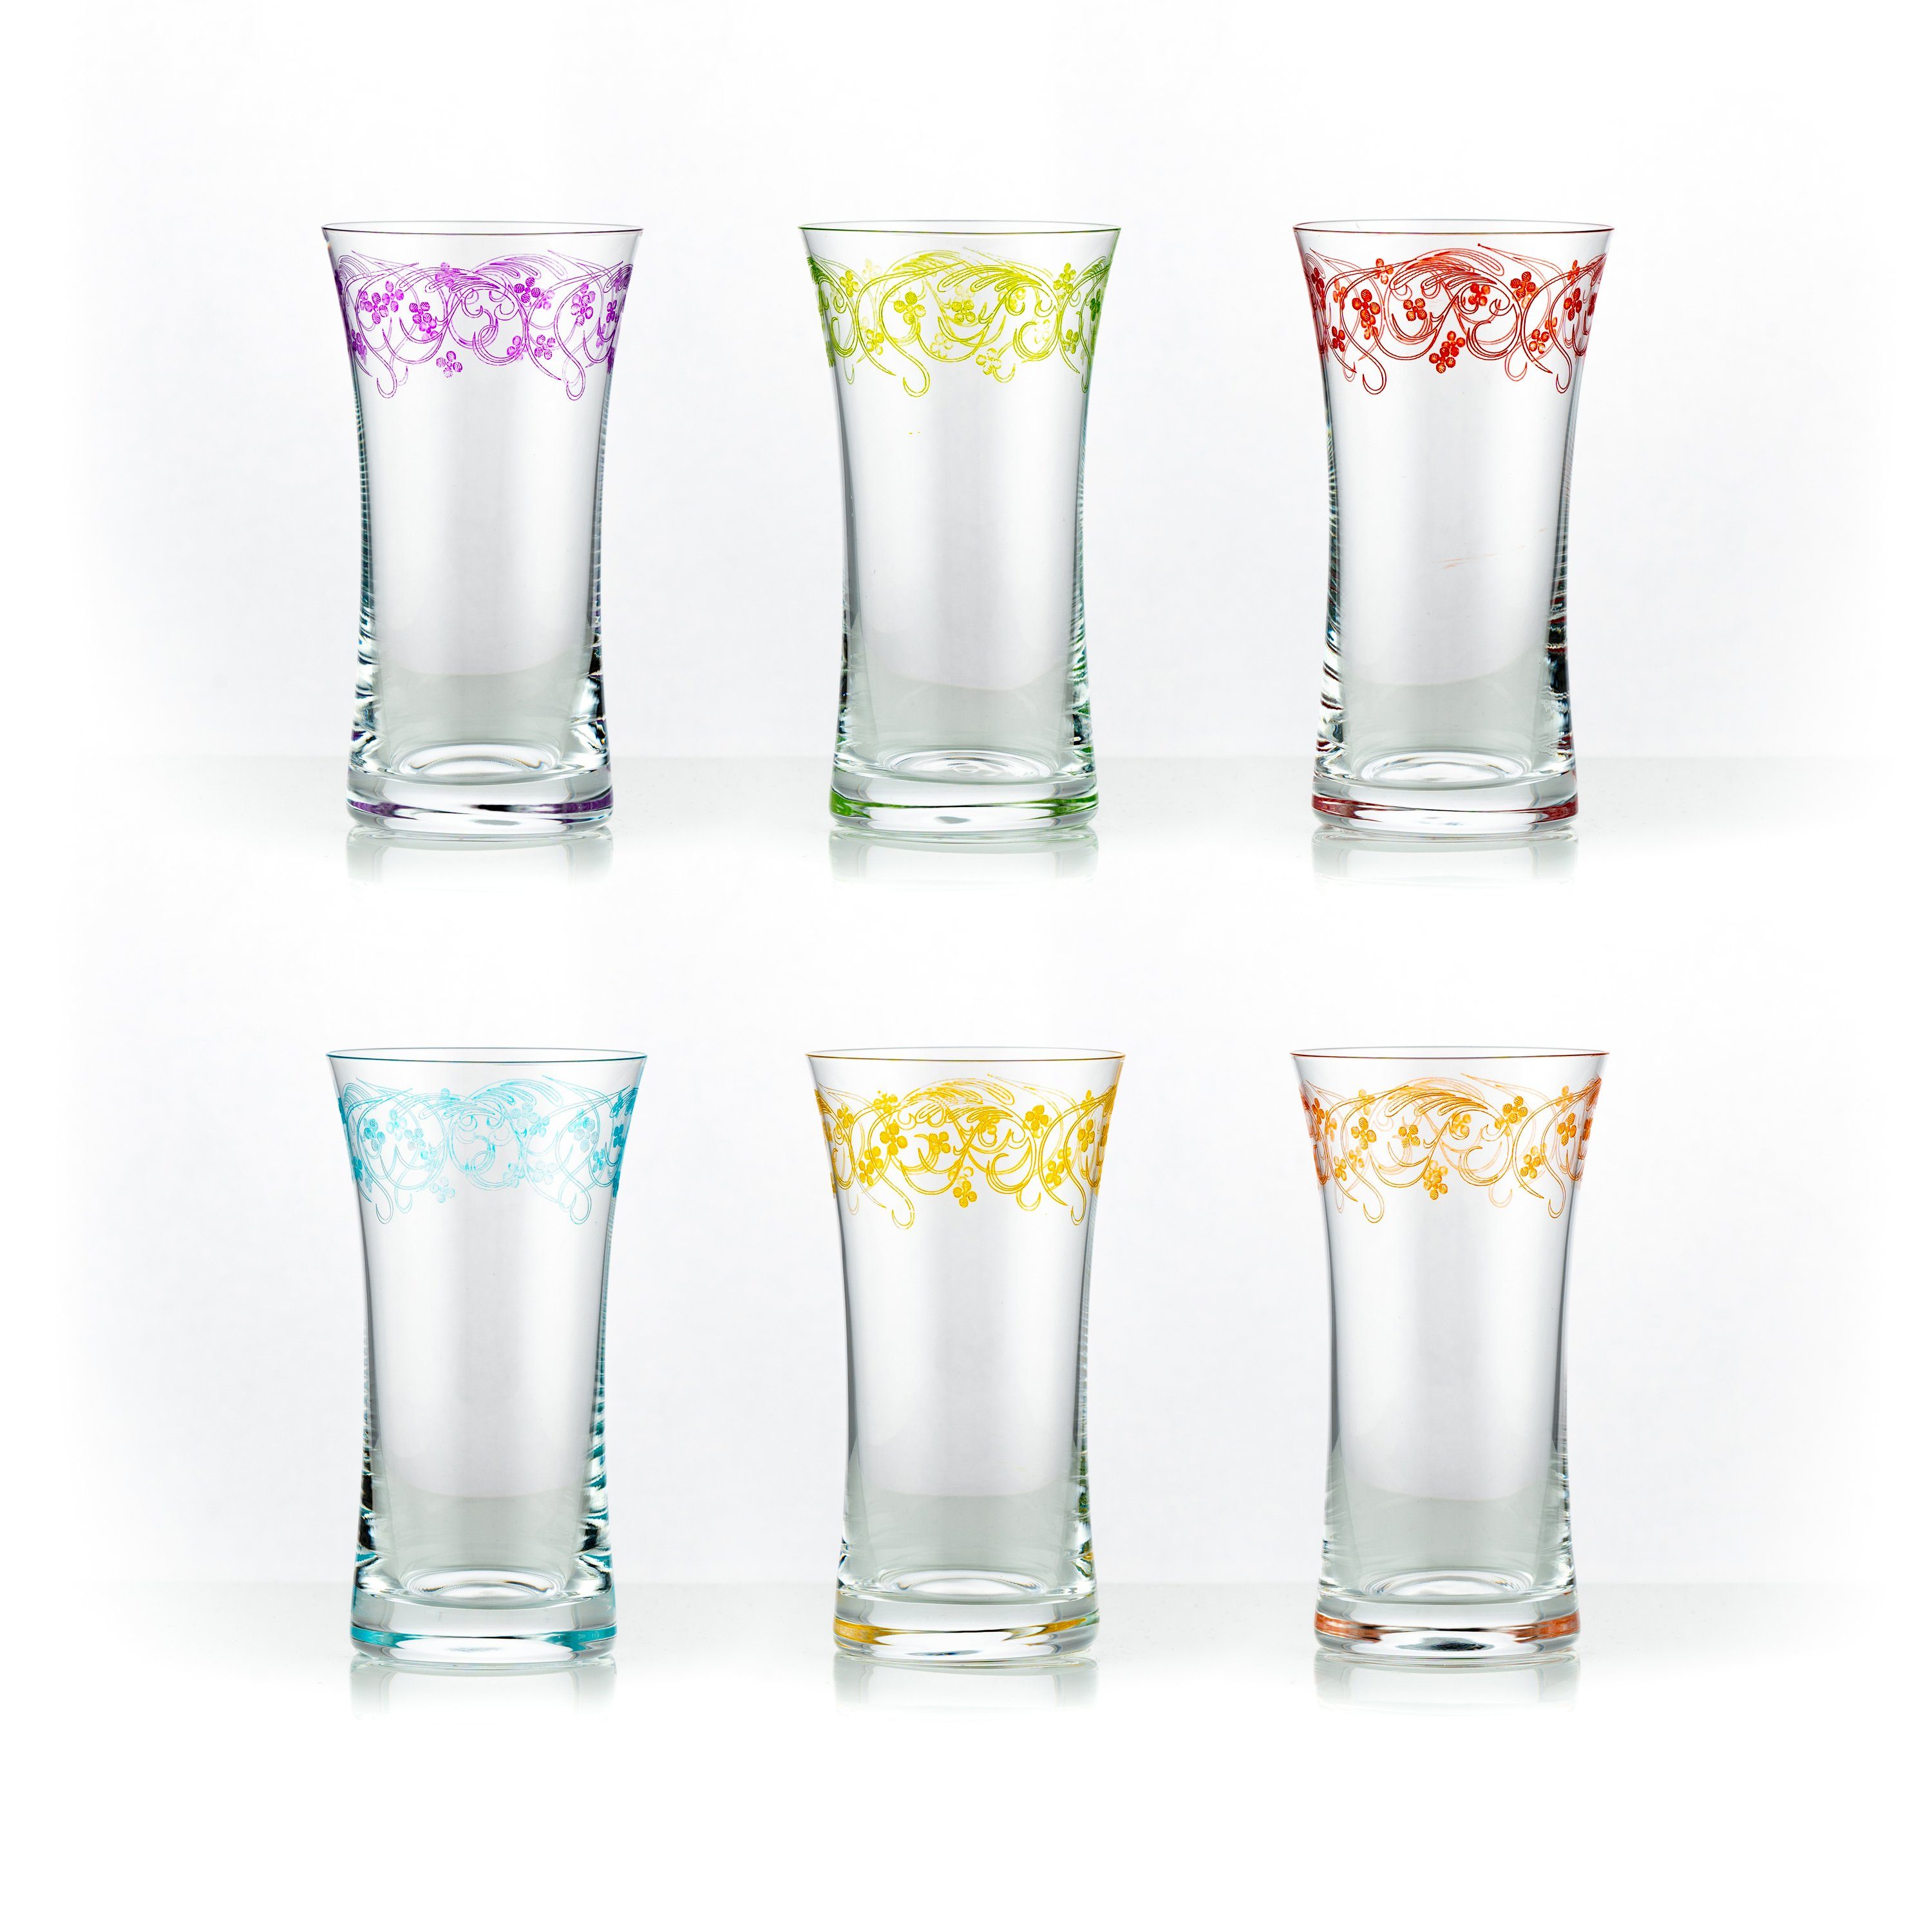 Crystalex Longdrinkglas Grace (bunte Gravur) Longdrinks 340 ml 6er Set, Kristallglas, bunte Gravur, Kristallglas